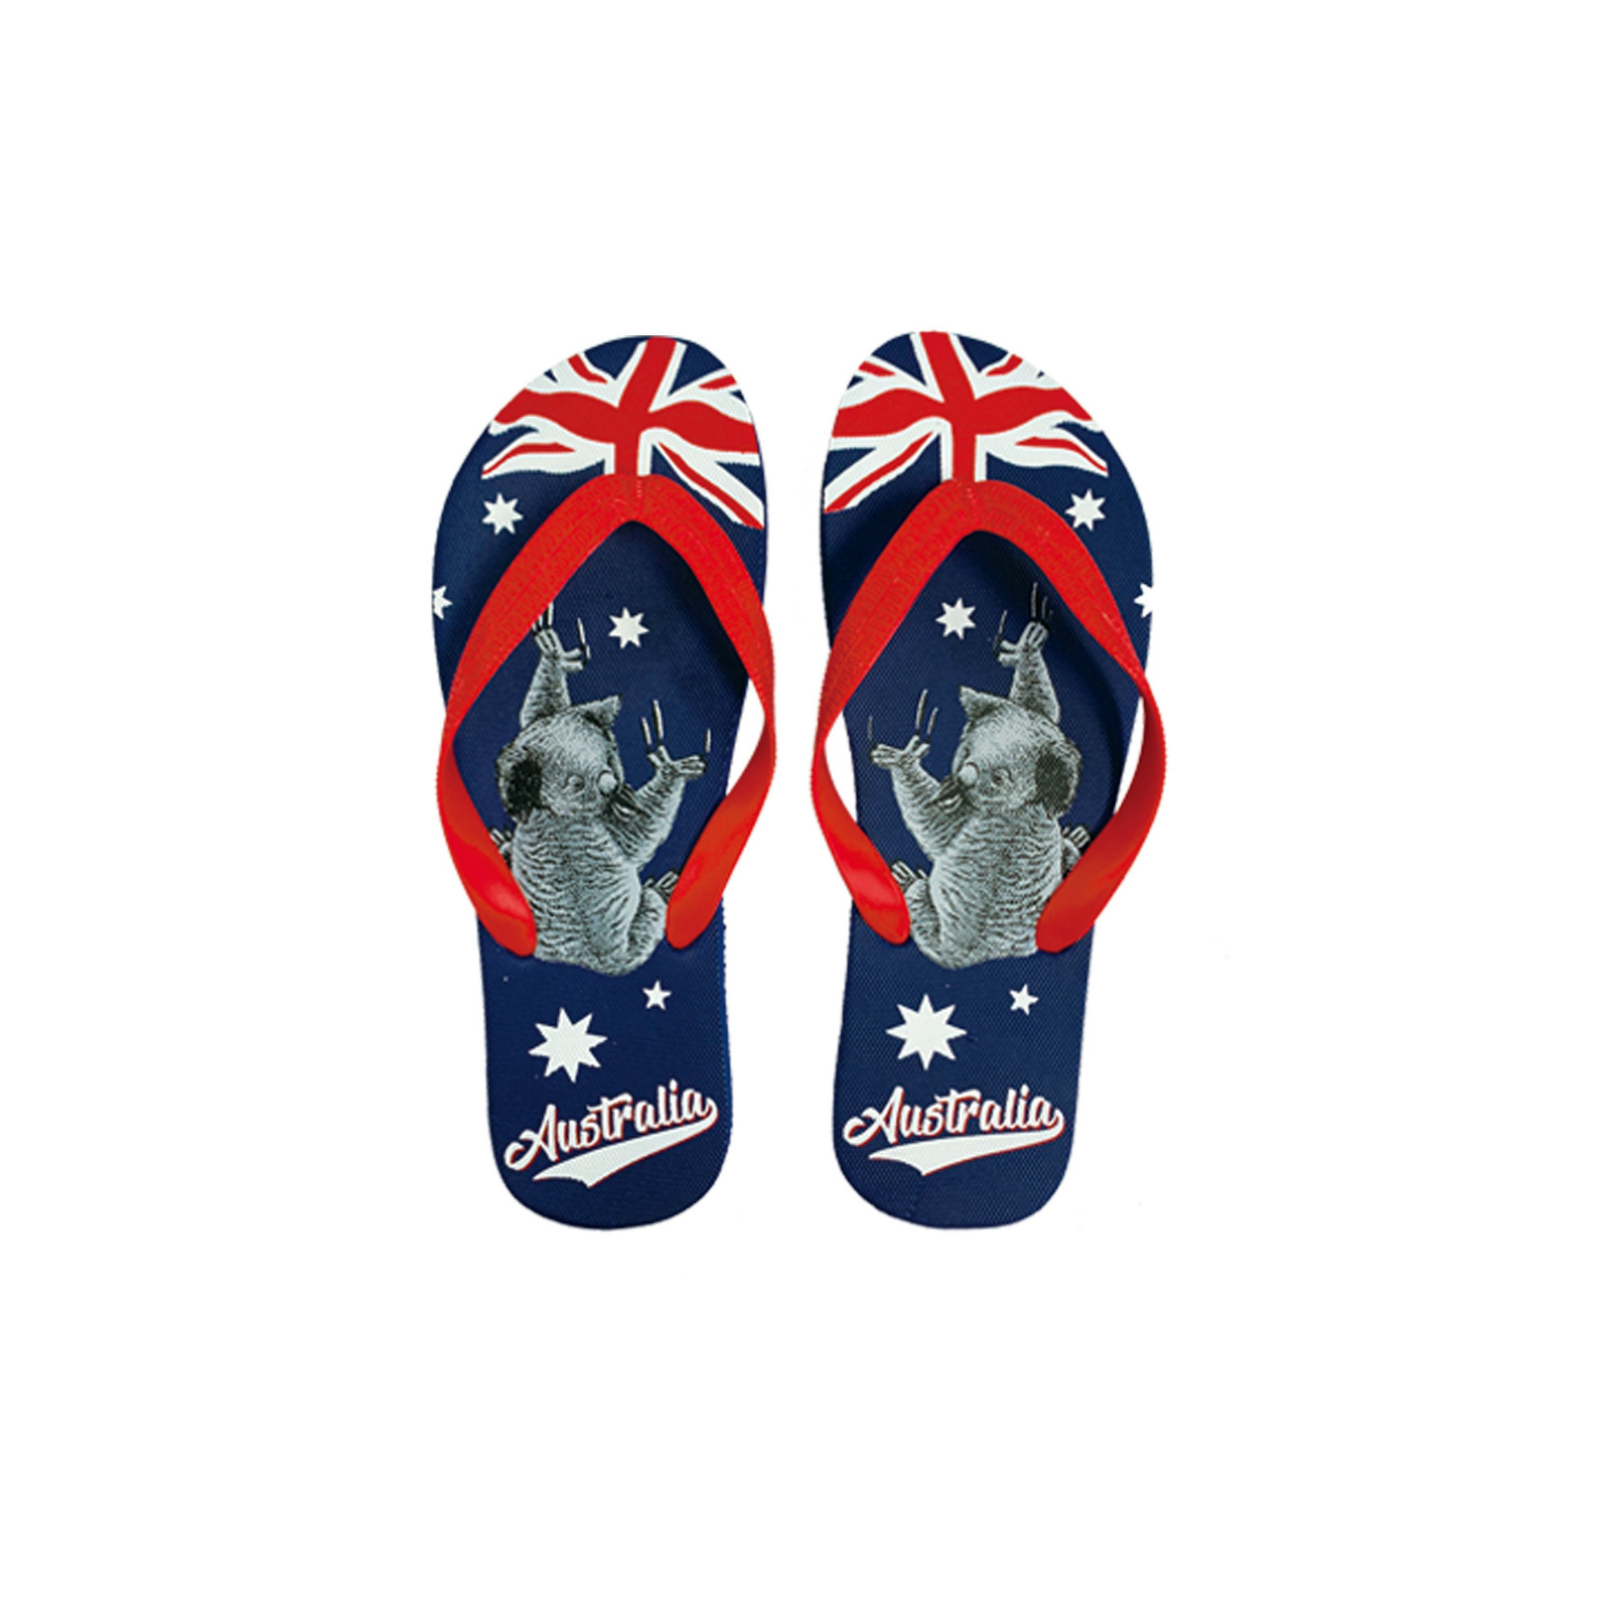 Thongs-Koala-Aus-Flag